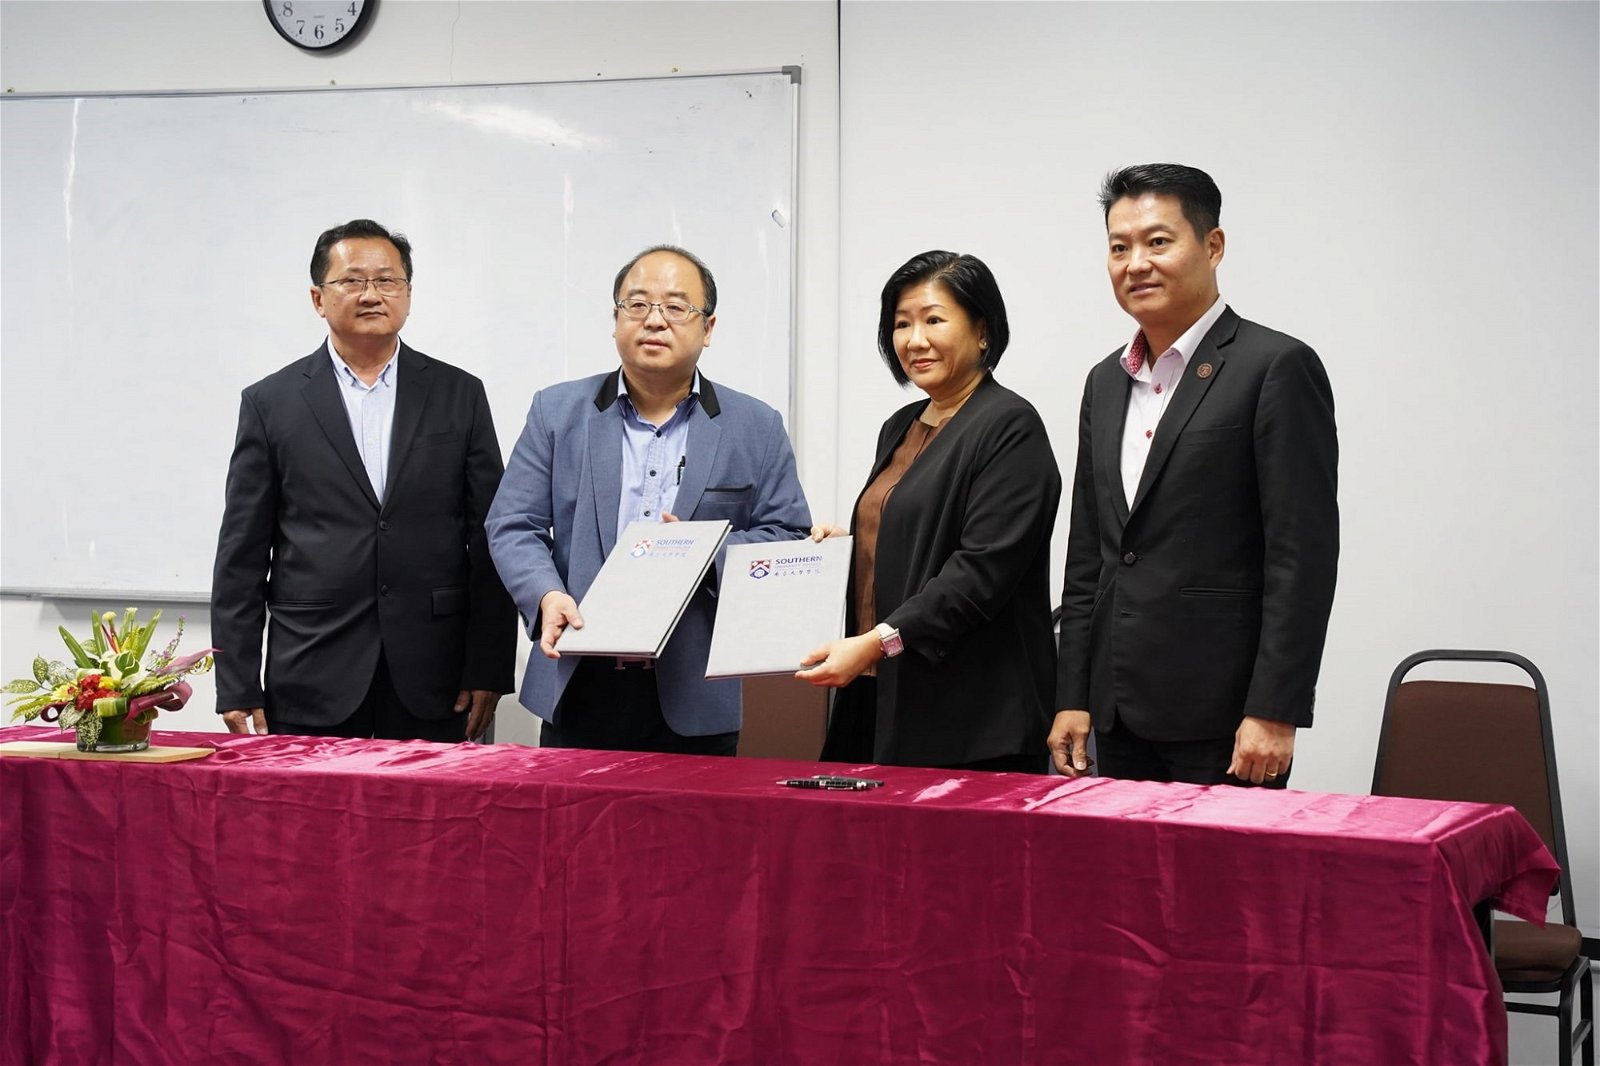 黄建翔（左2起）、郑玉美代表双方签署合作协议书，由吴福才（左）和陈洺臣（右）见证。